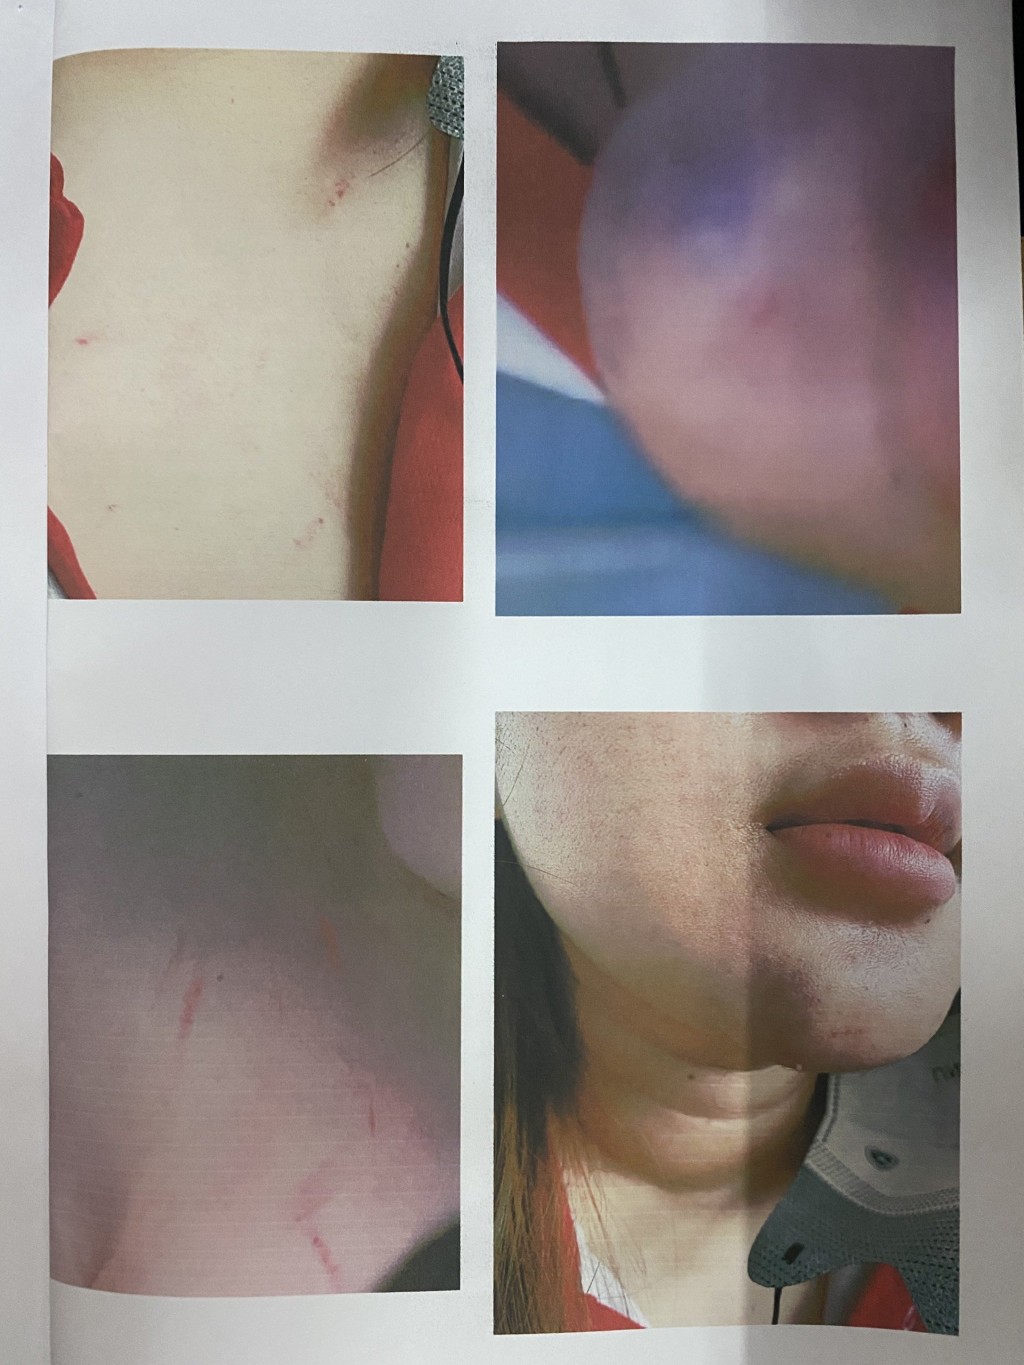 Vụ nữ sinh lớp 12 bị phụ huynh đánh gây thương tích: Trường THPT Sài Gòn lên tiếng